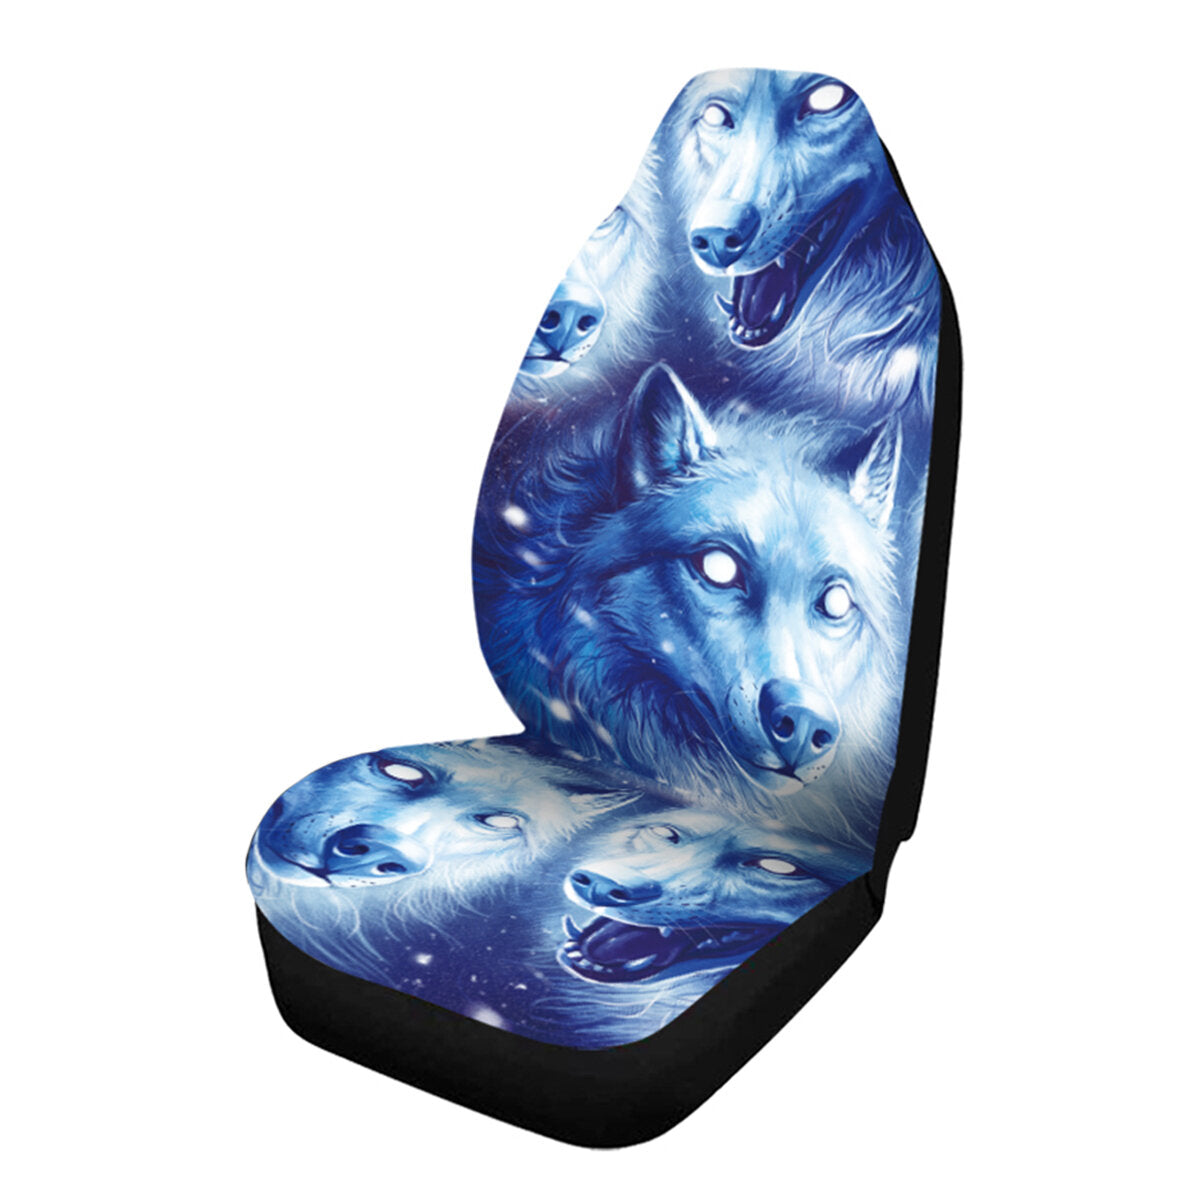 1/7 stuks universele autostoel cover wolf blauw & wit ontwerp voorstoel volledige beschermen